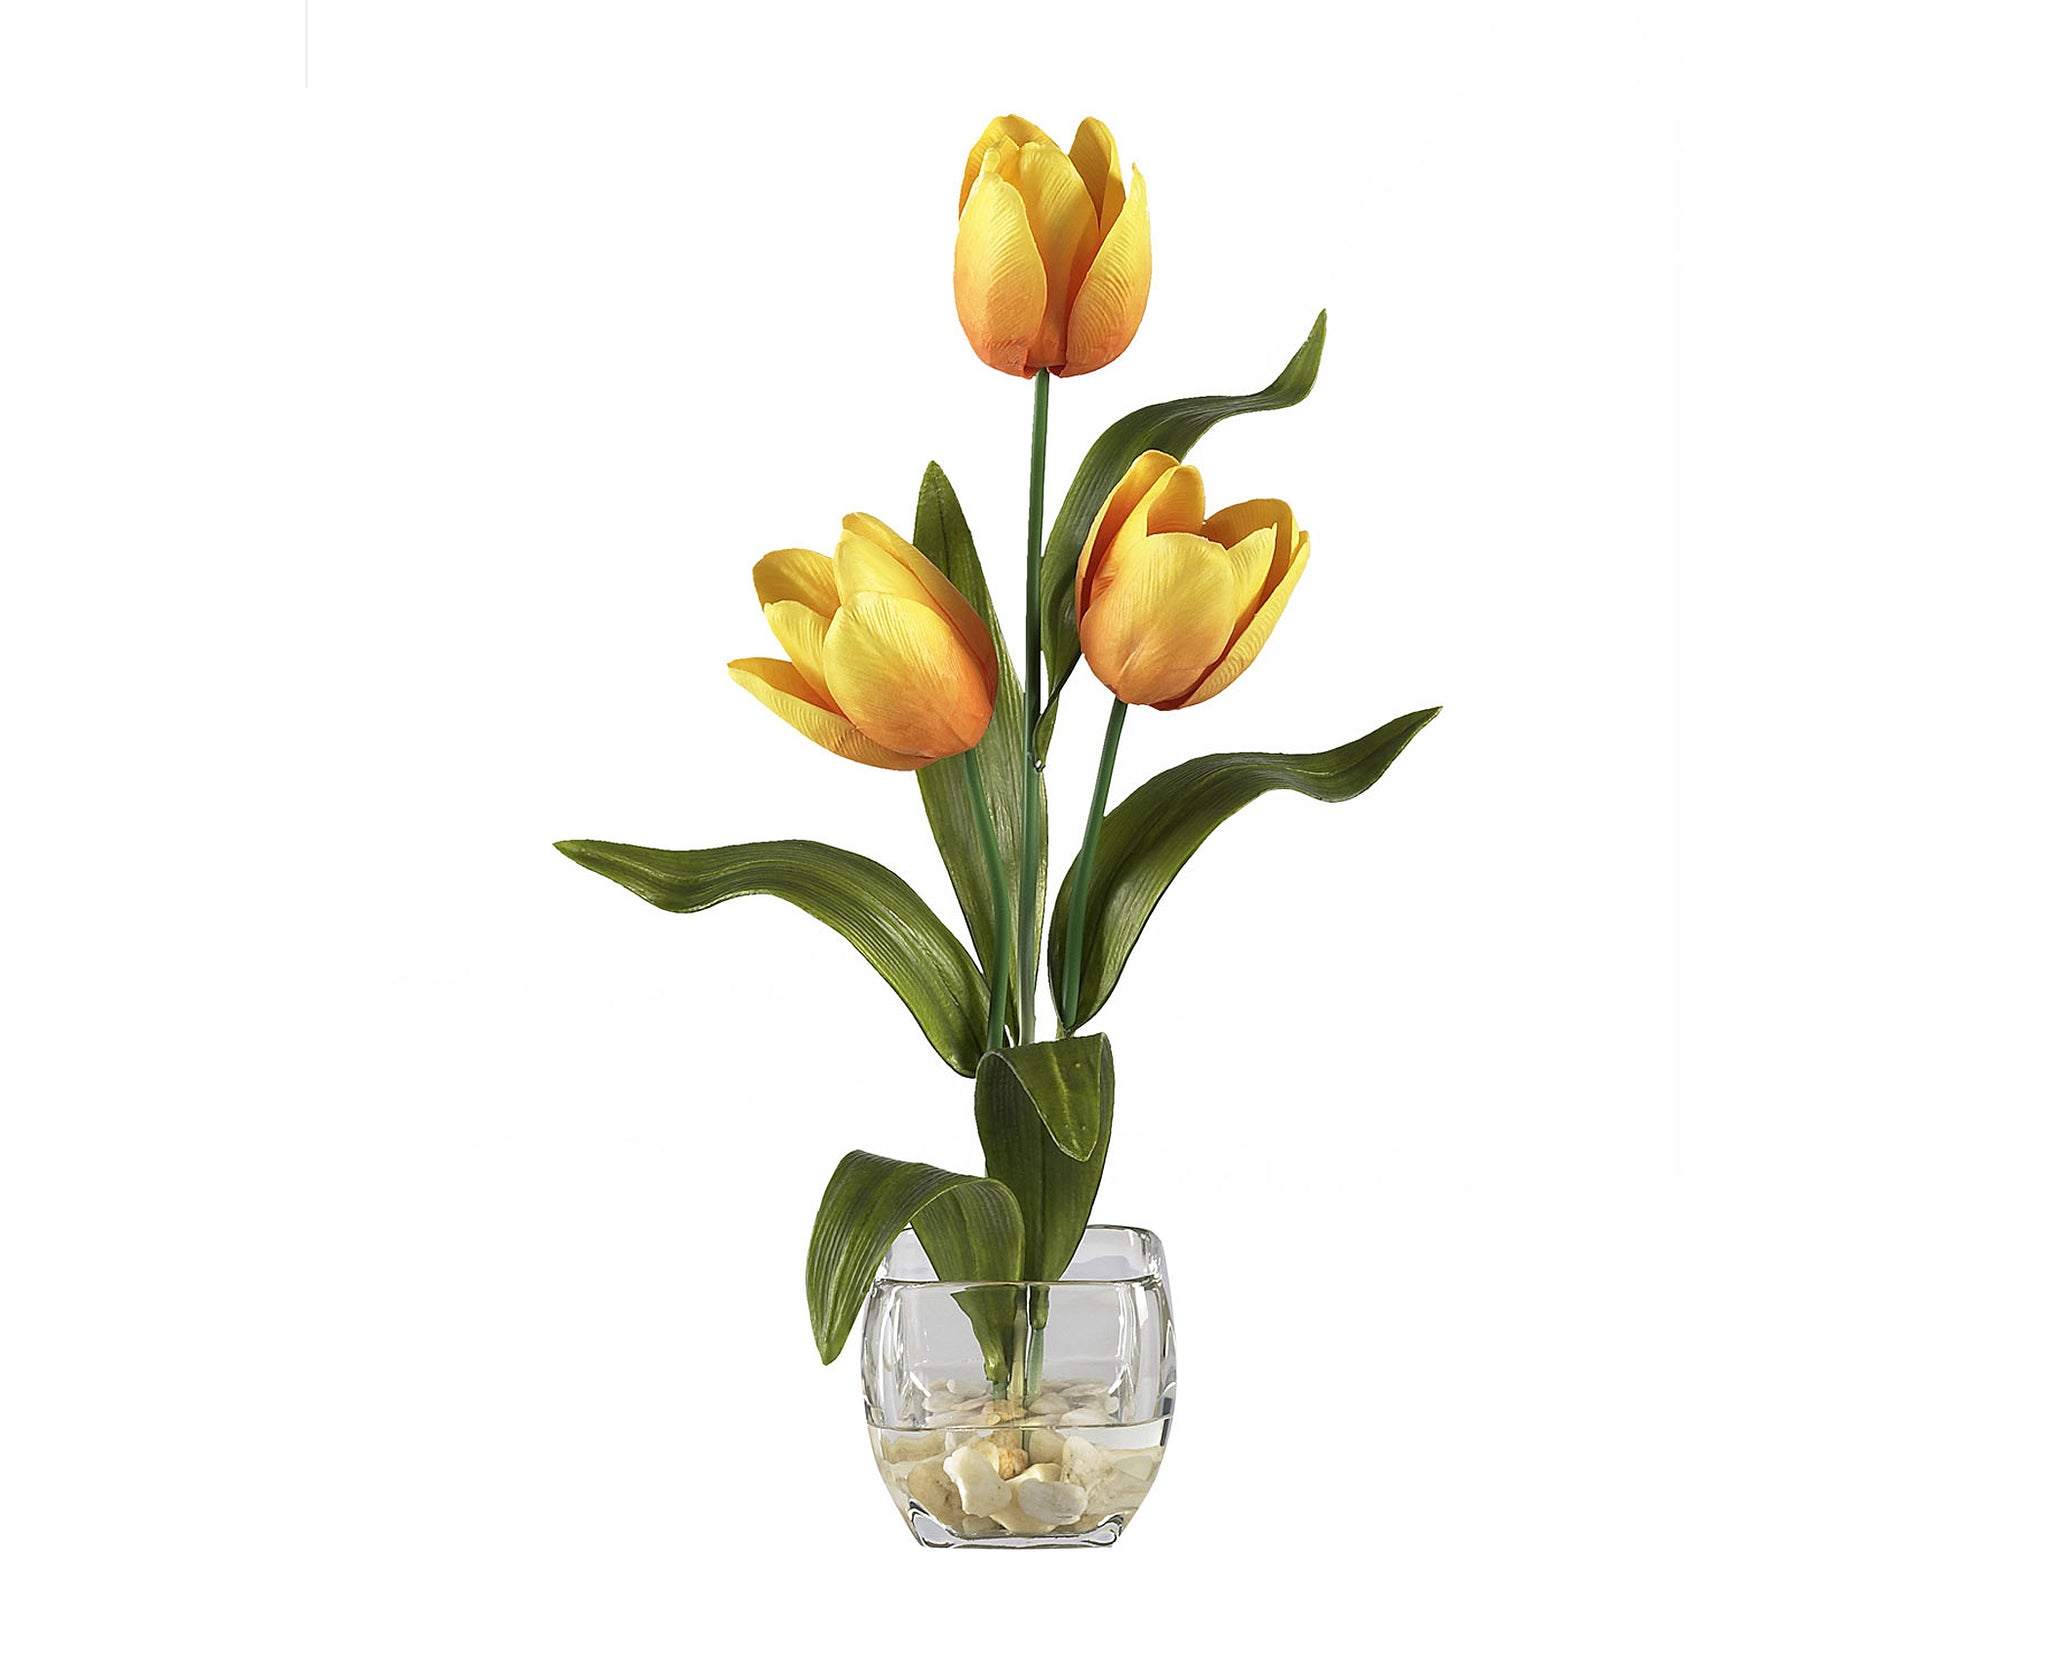 Tulips Yellow Flowers